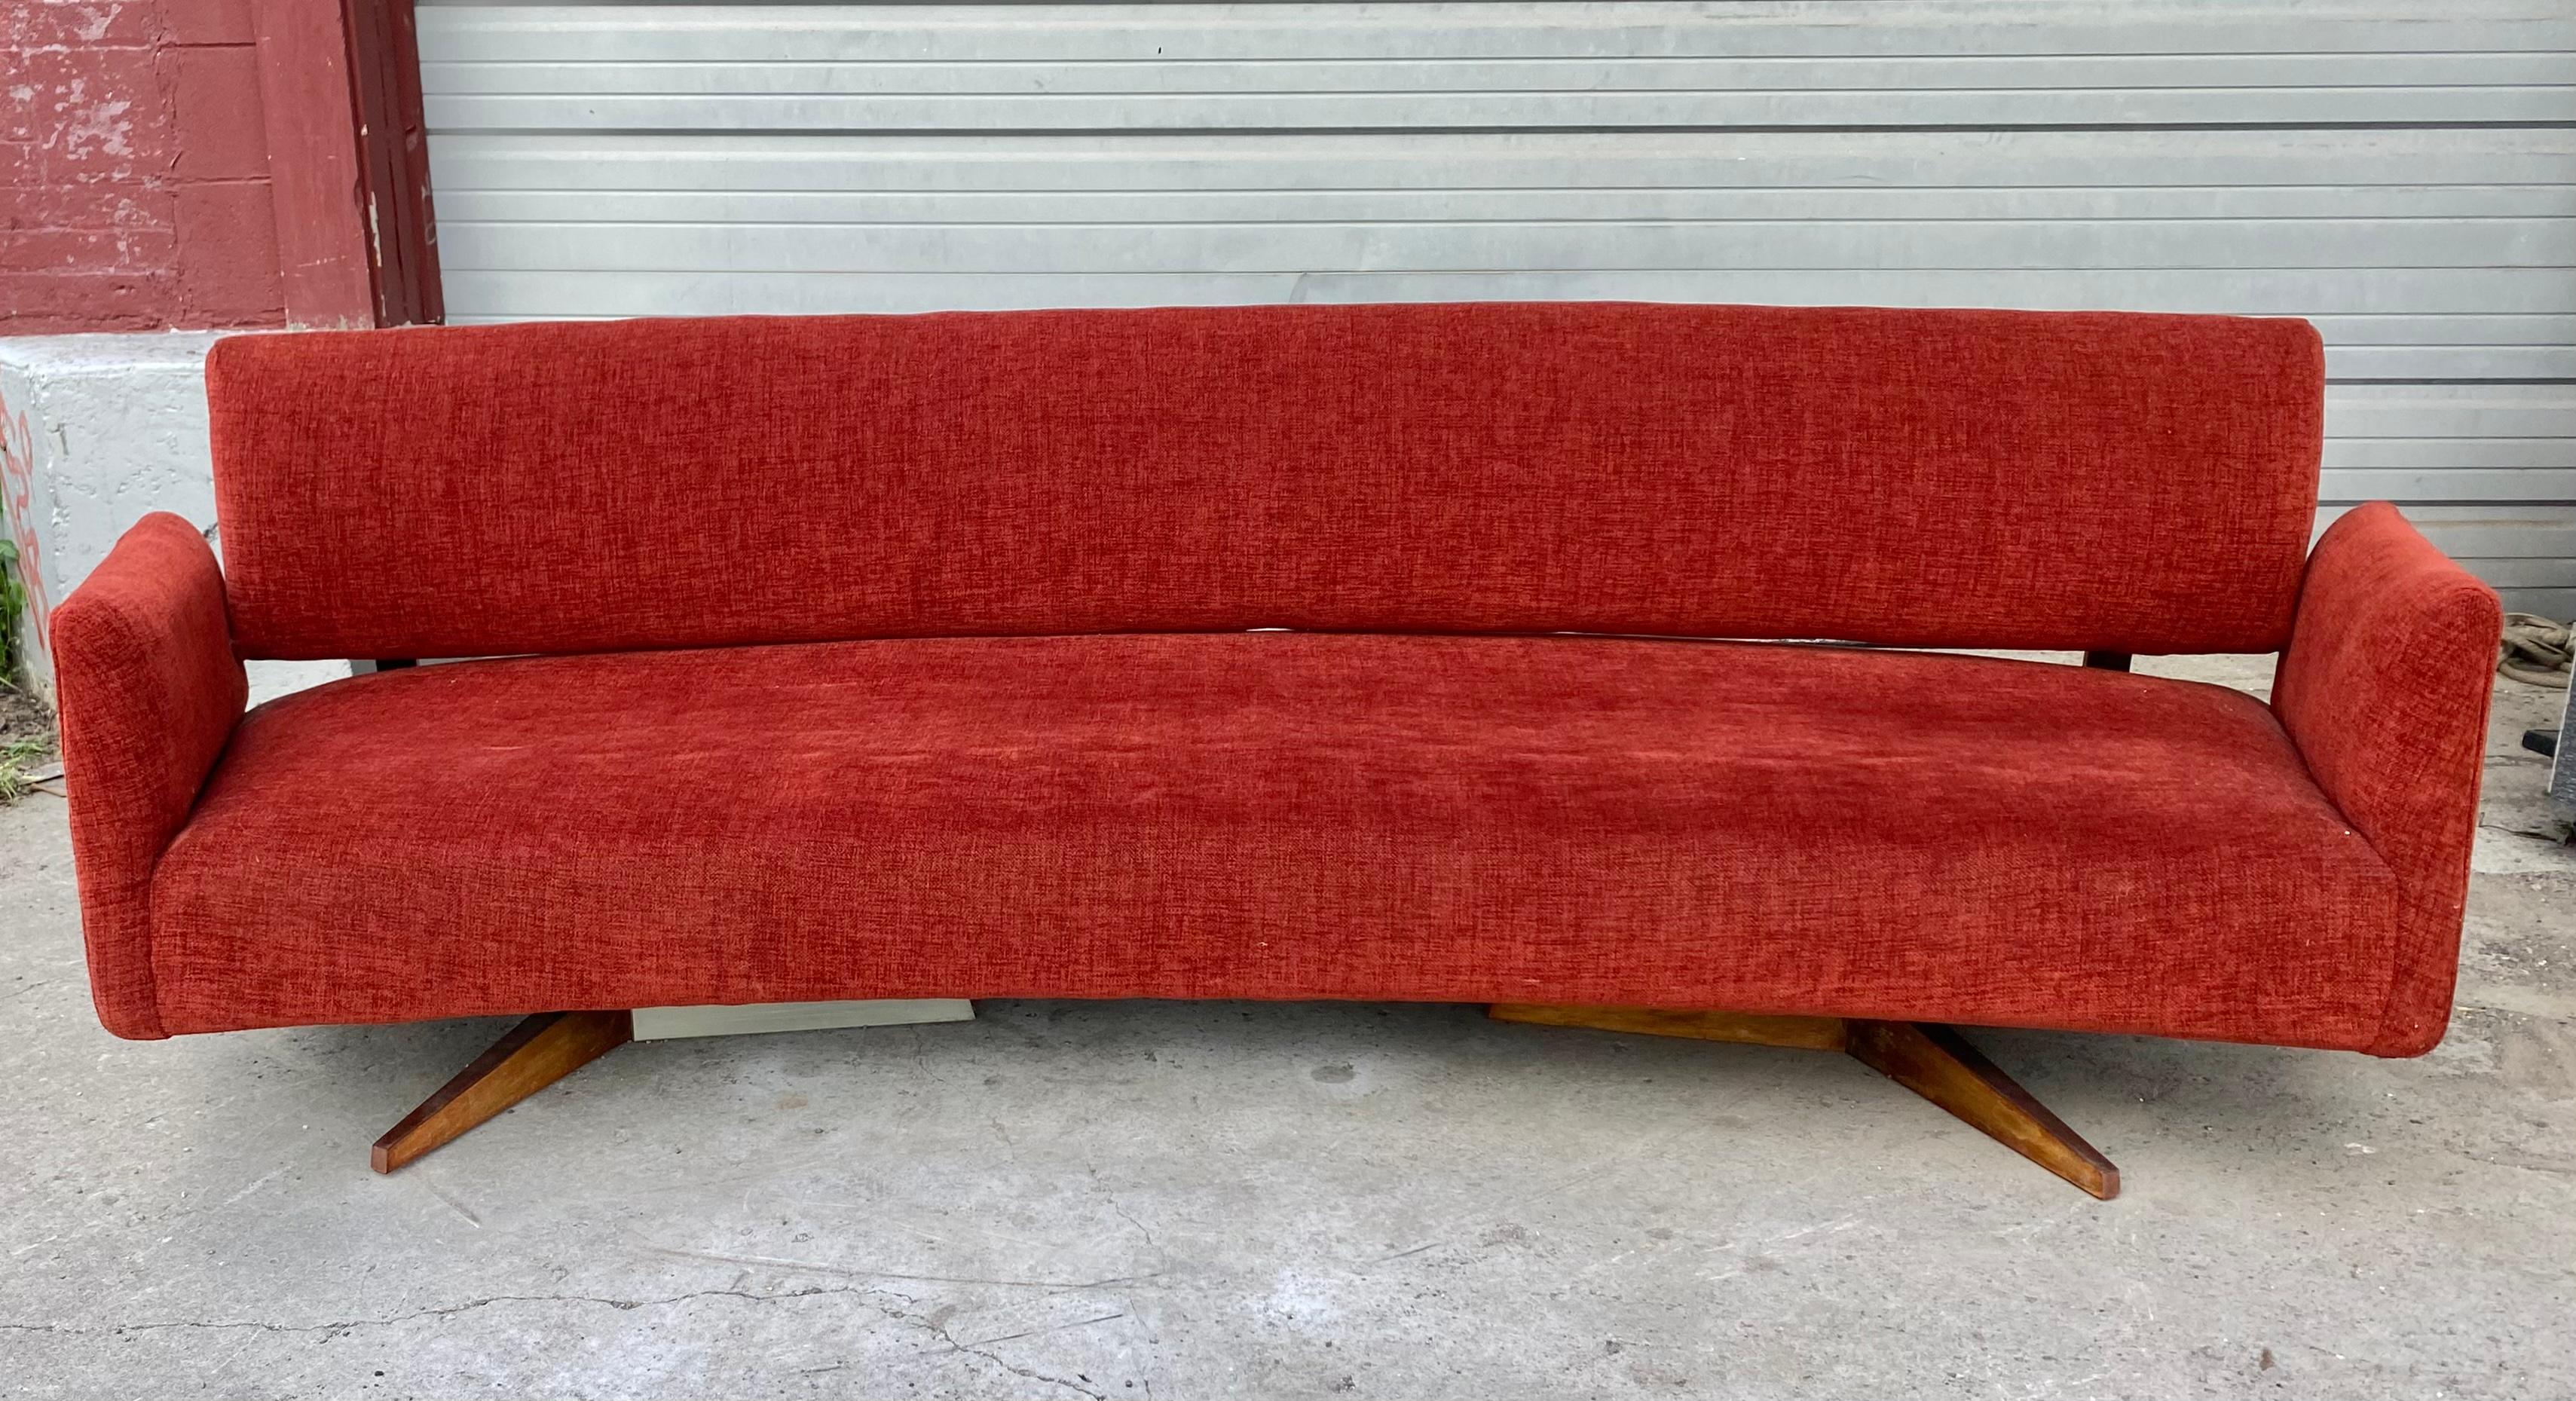 Atemberaubende Mid Century Modern Sofa zugeschrieben Jens Risom..Erstaunlich Stil und Design... Kürzlich neu gepolstert, extrem bequem,, Lieferung per Hand nach New York City oder irgendwo auf dem Weg von Buffalo NY